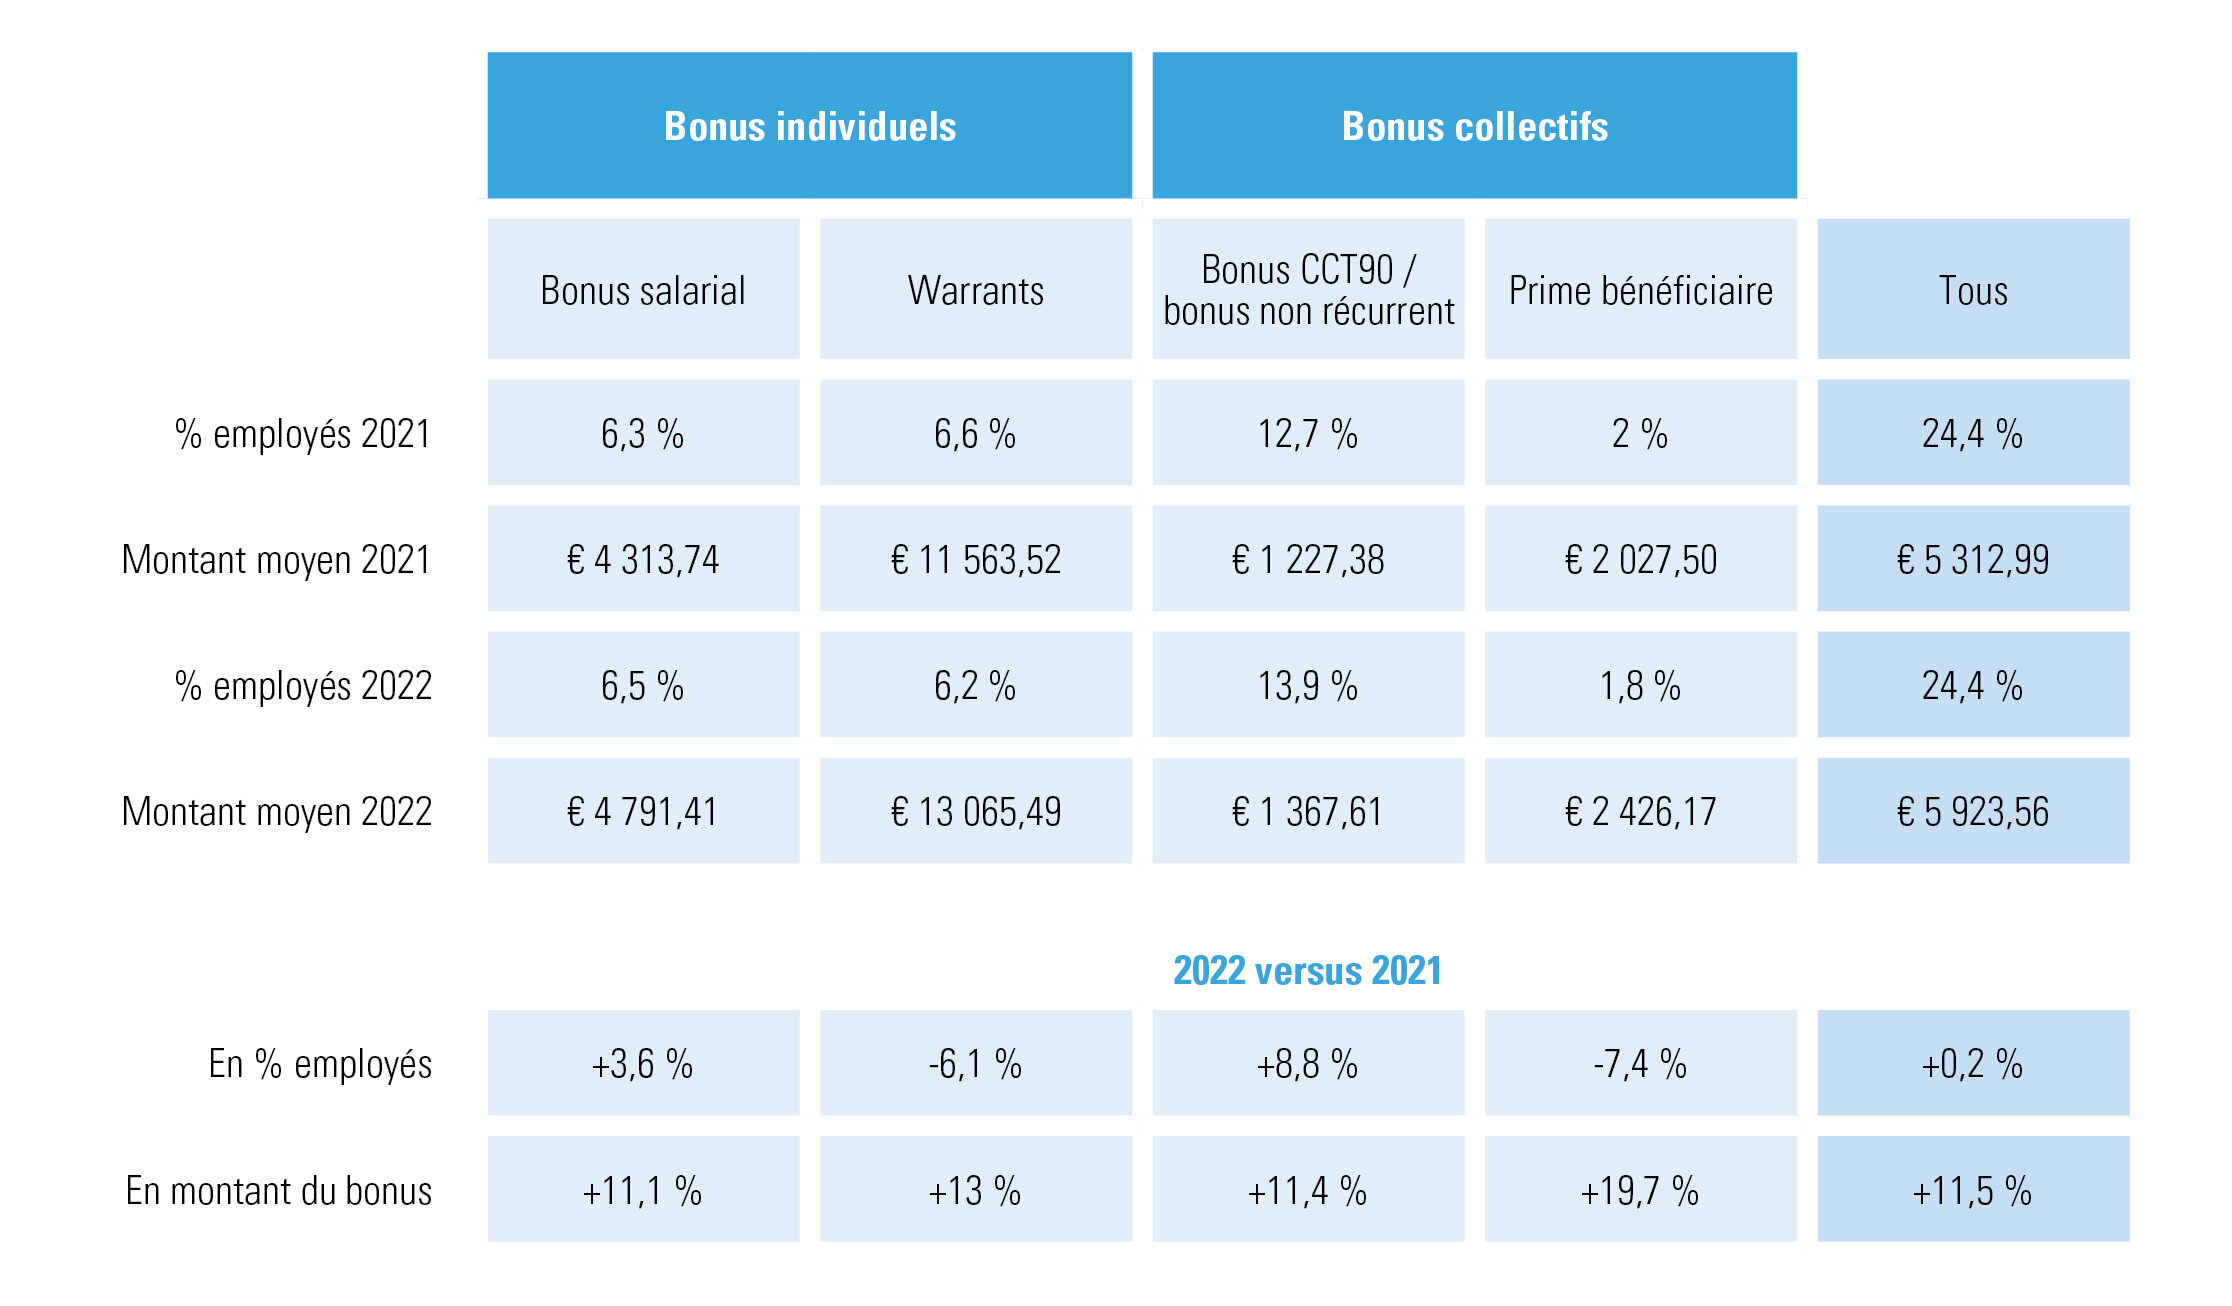 Aperçu des bonus octroyés aux employés du secteur marchand, en % et €, pour les années 2022 et 2021, et comparaison entre les deux années